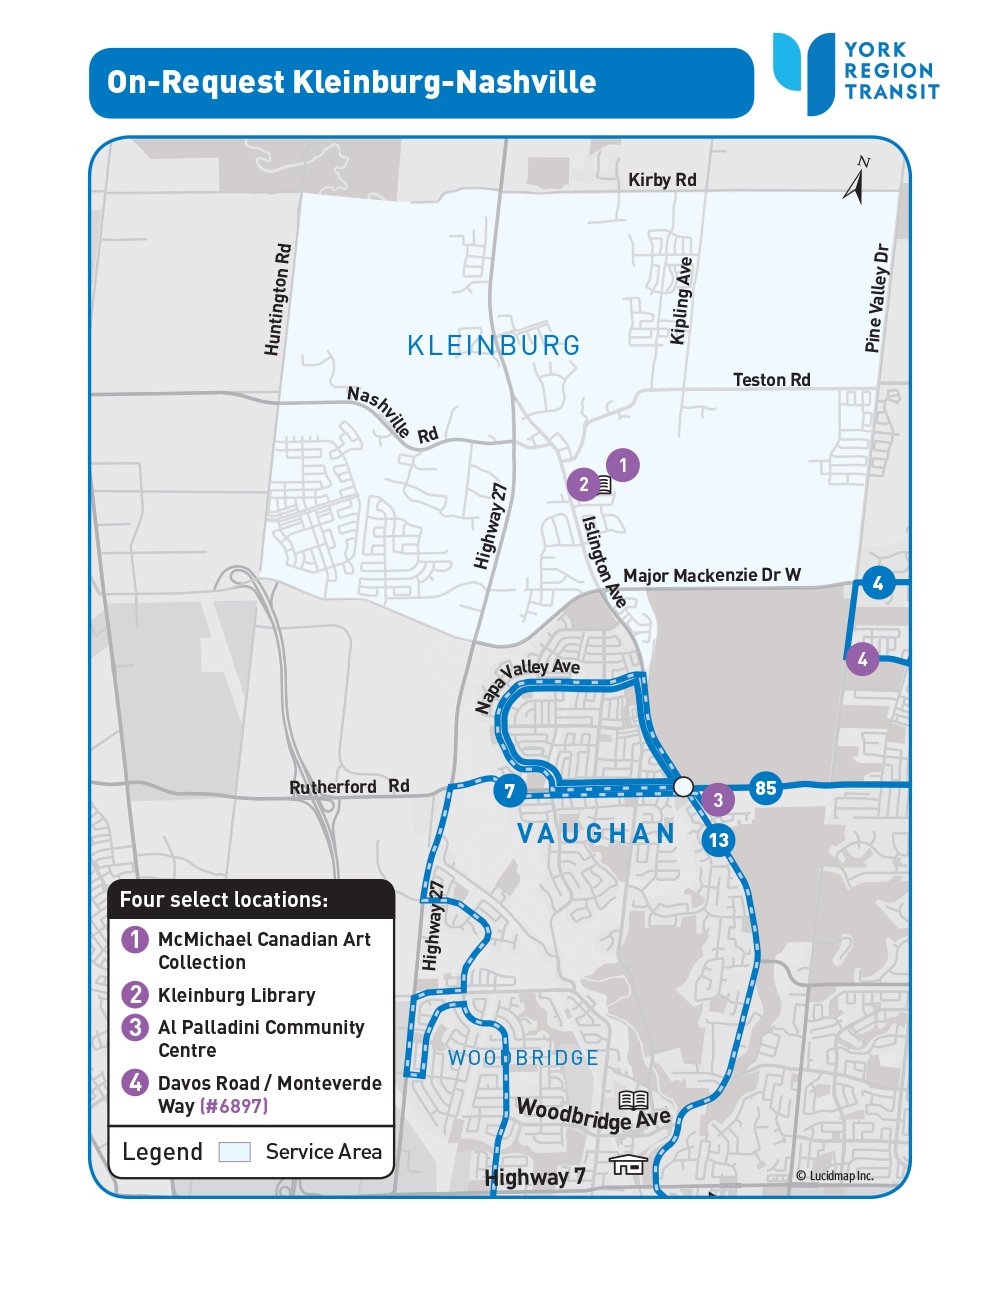 On-Request Kleinburg-Nashville service area map